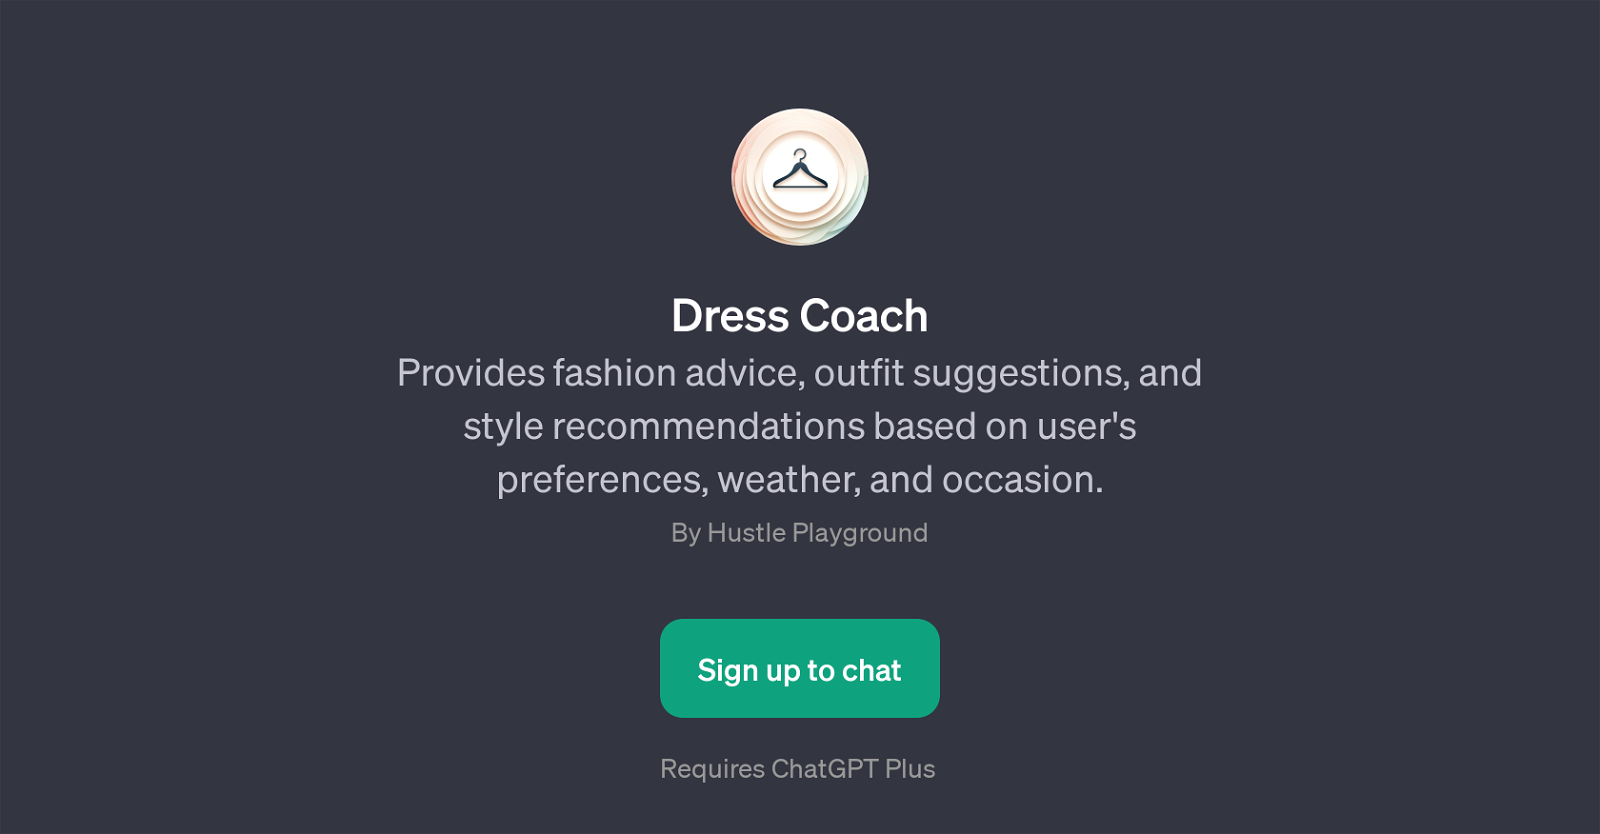 Dress Coach website